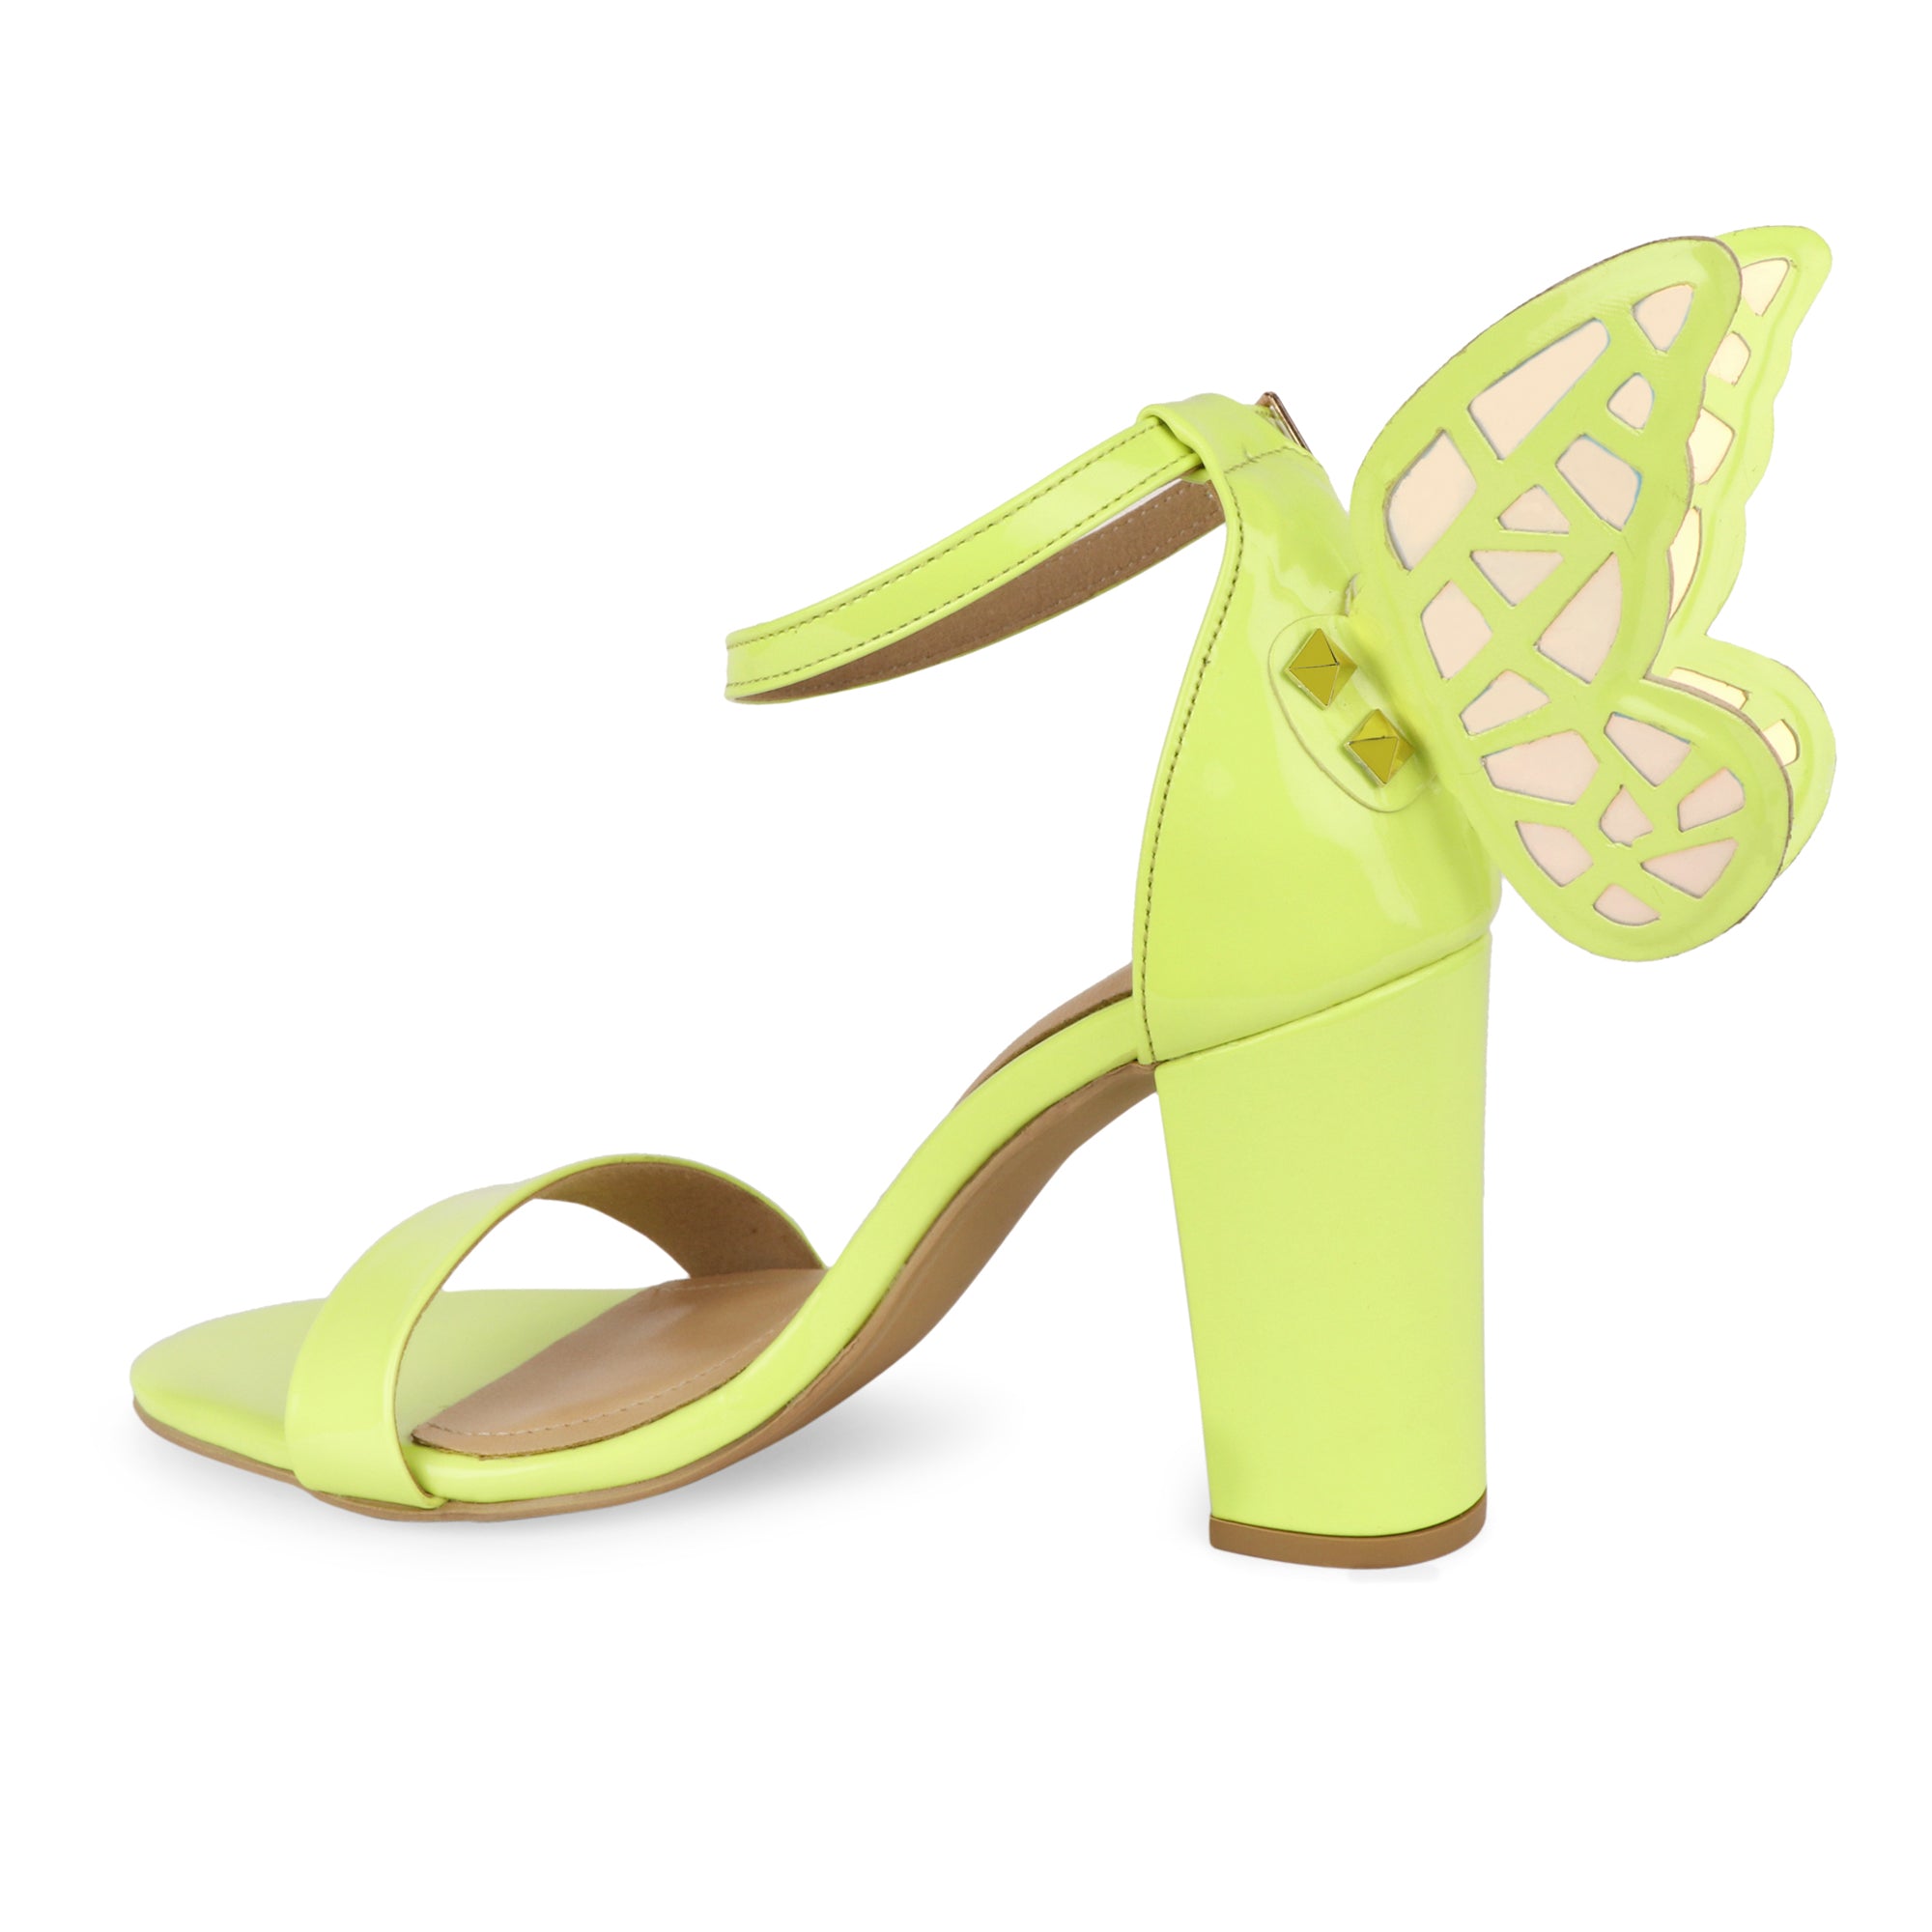 Pink Butterfly Heels - Lucite Heel Sandals - High Heel Sandals - Lulus